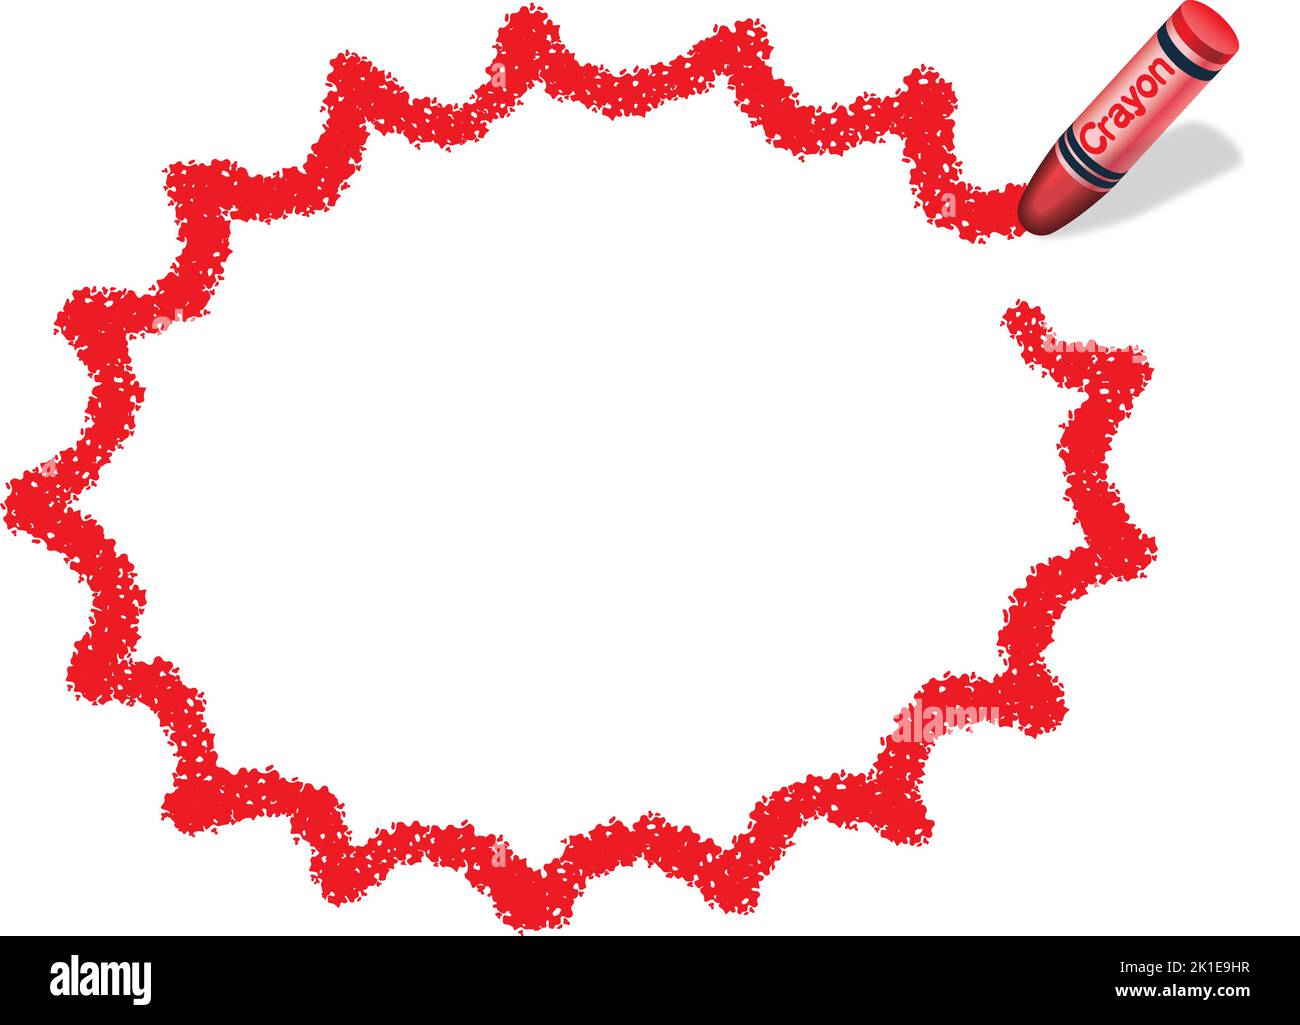 Handgezeichneter Vektor Rot gezackt Ellipse Kreide Textur Rahmen isoliert auf Weißem Hintergrund. Stock Vektor